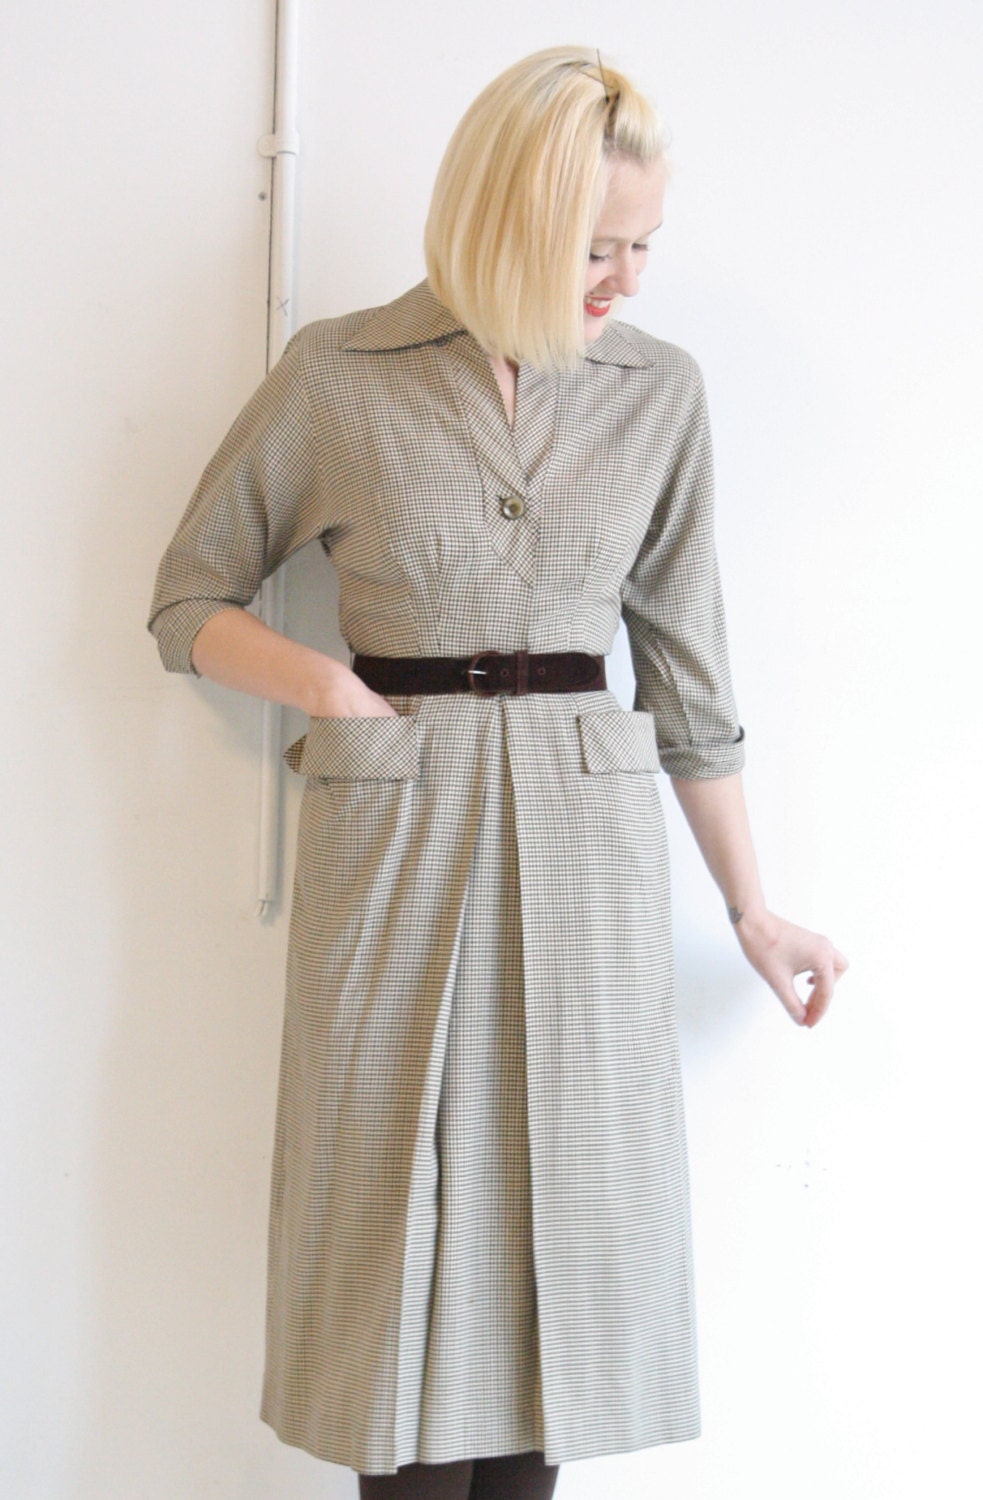 1940s Dress // vintage 1940s dress // Pat by dethrosevintage